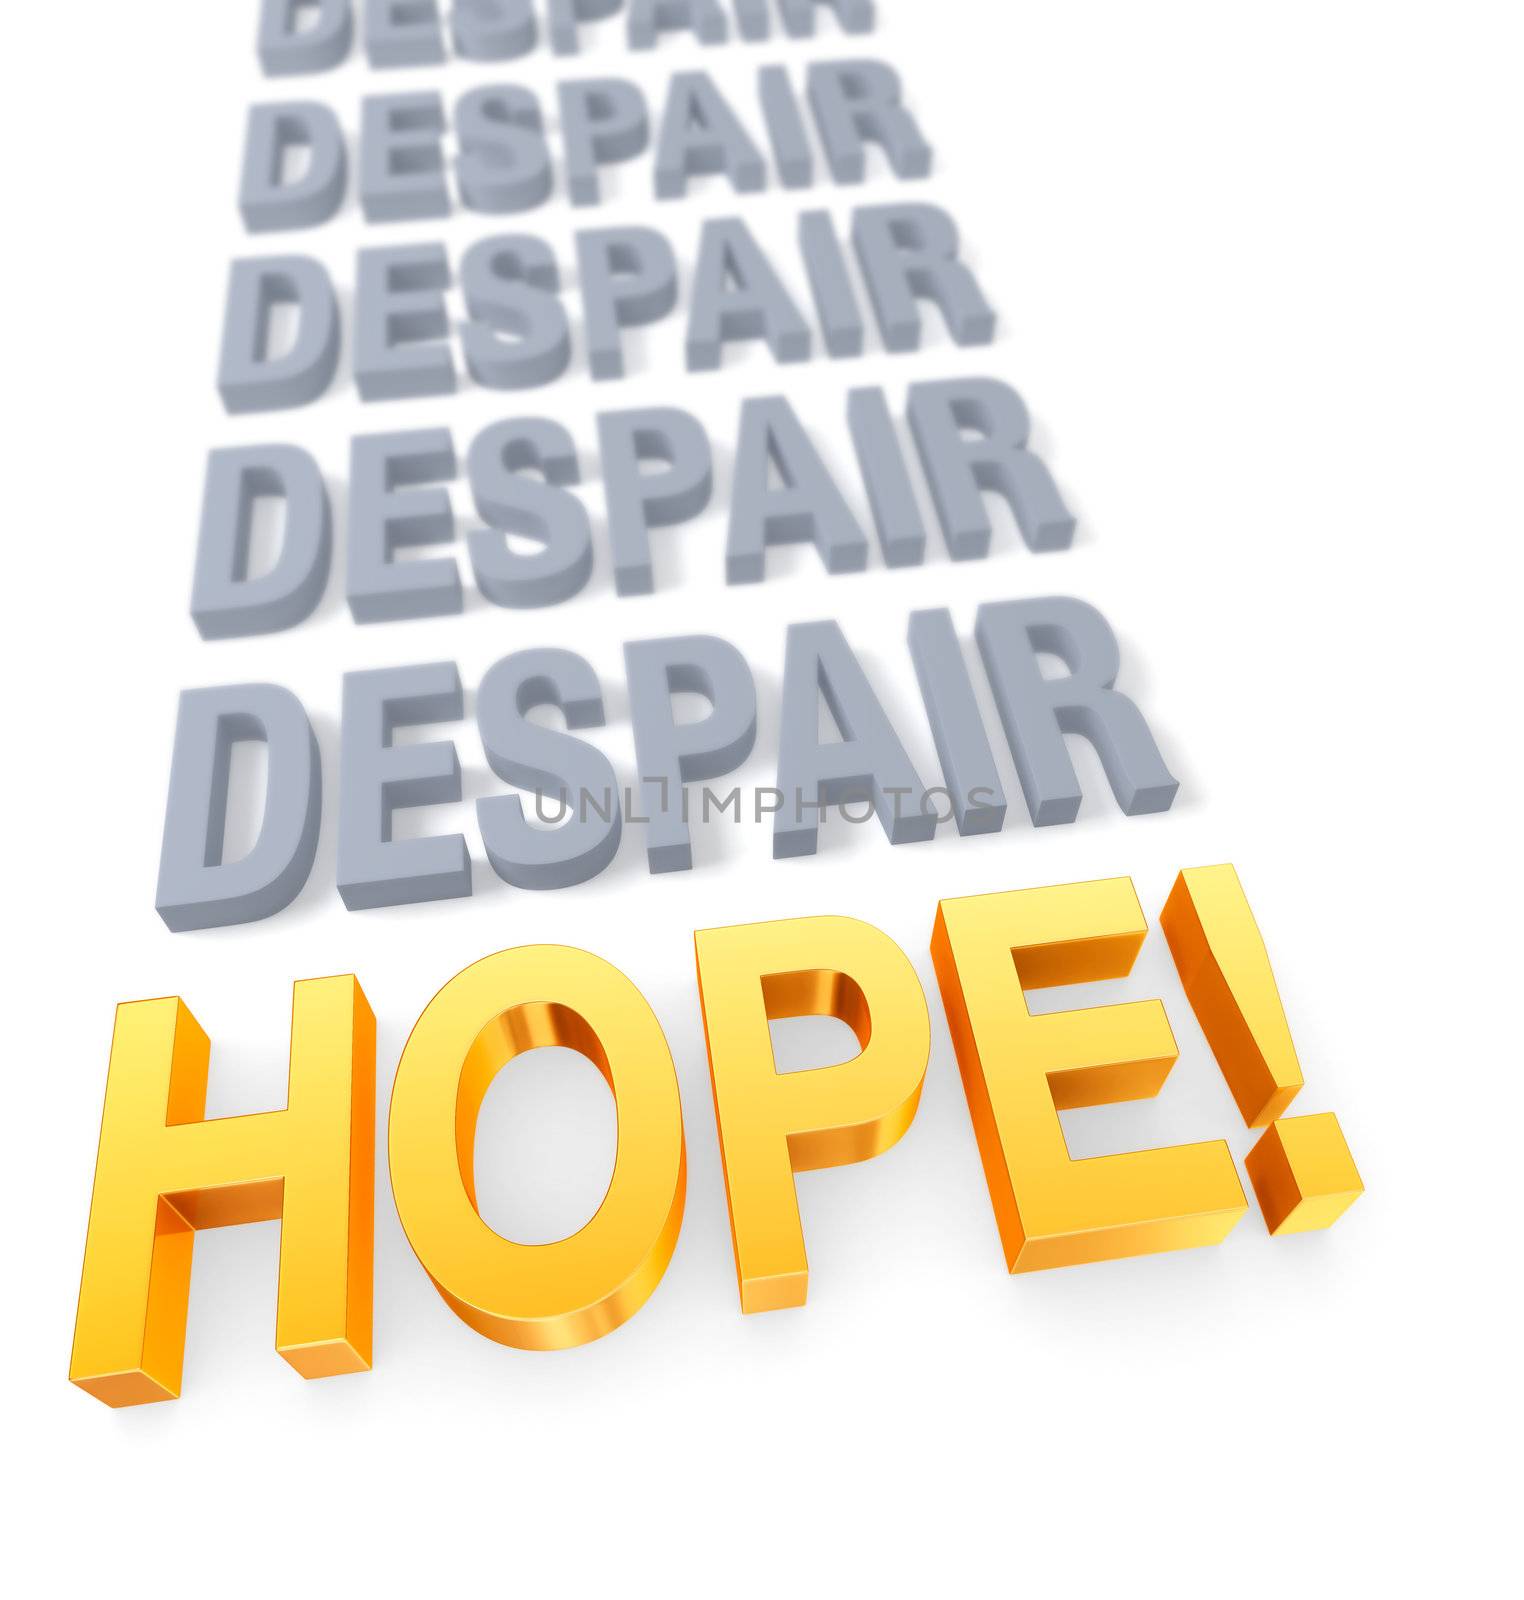 Focus On Hope Over Despair by Em3